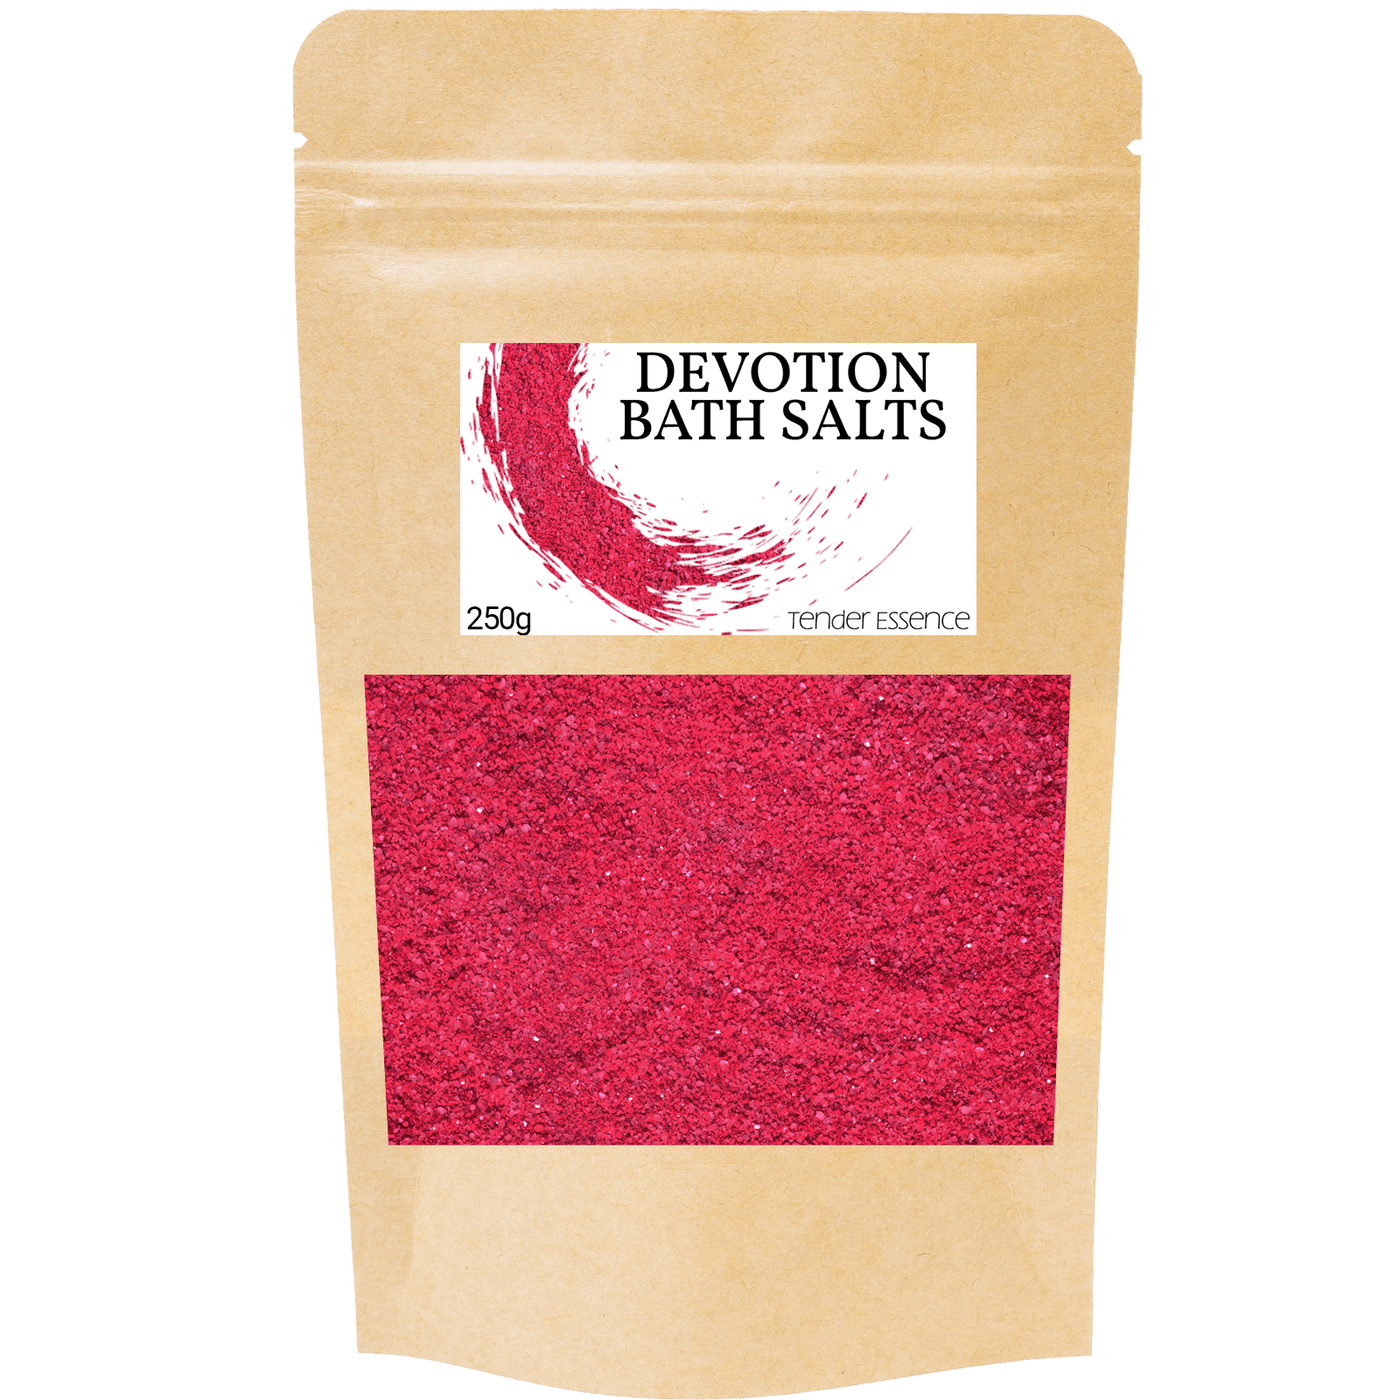 Devotion Bath Salts